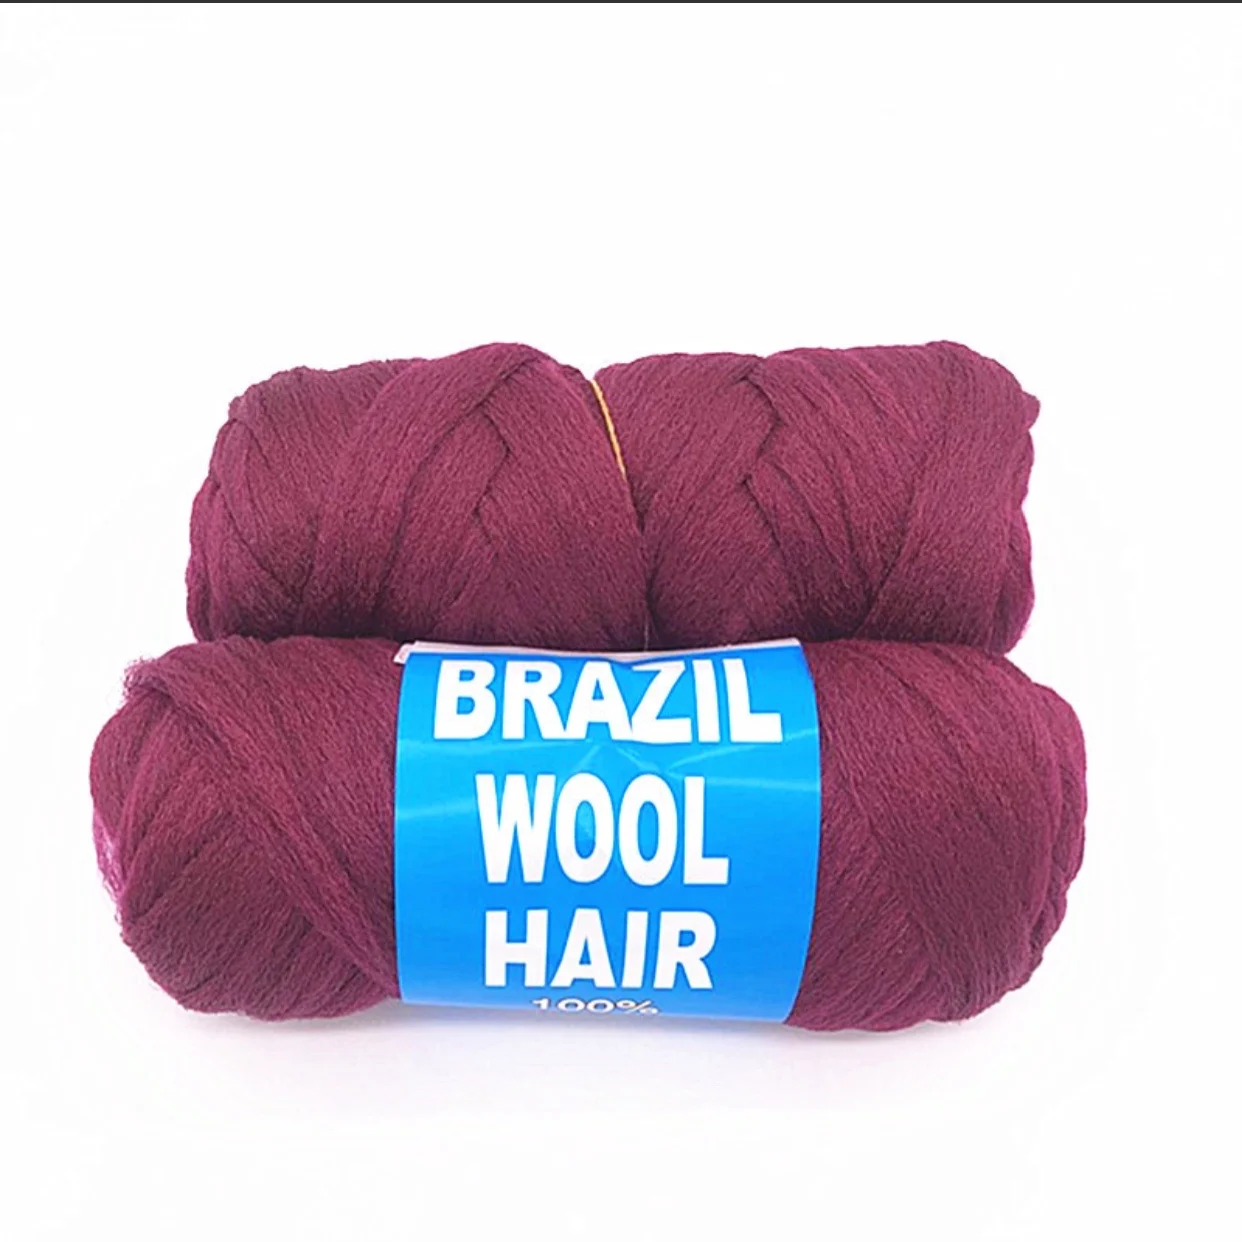 Оптовая продажа, плетеные человеческие волосы, 100% полипропиленовая ПП bcf пряжа и бразильская шерстяная пряжа для плетения